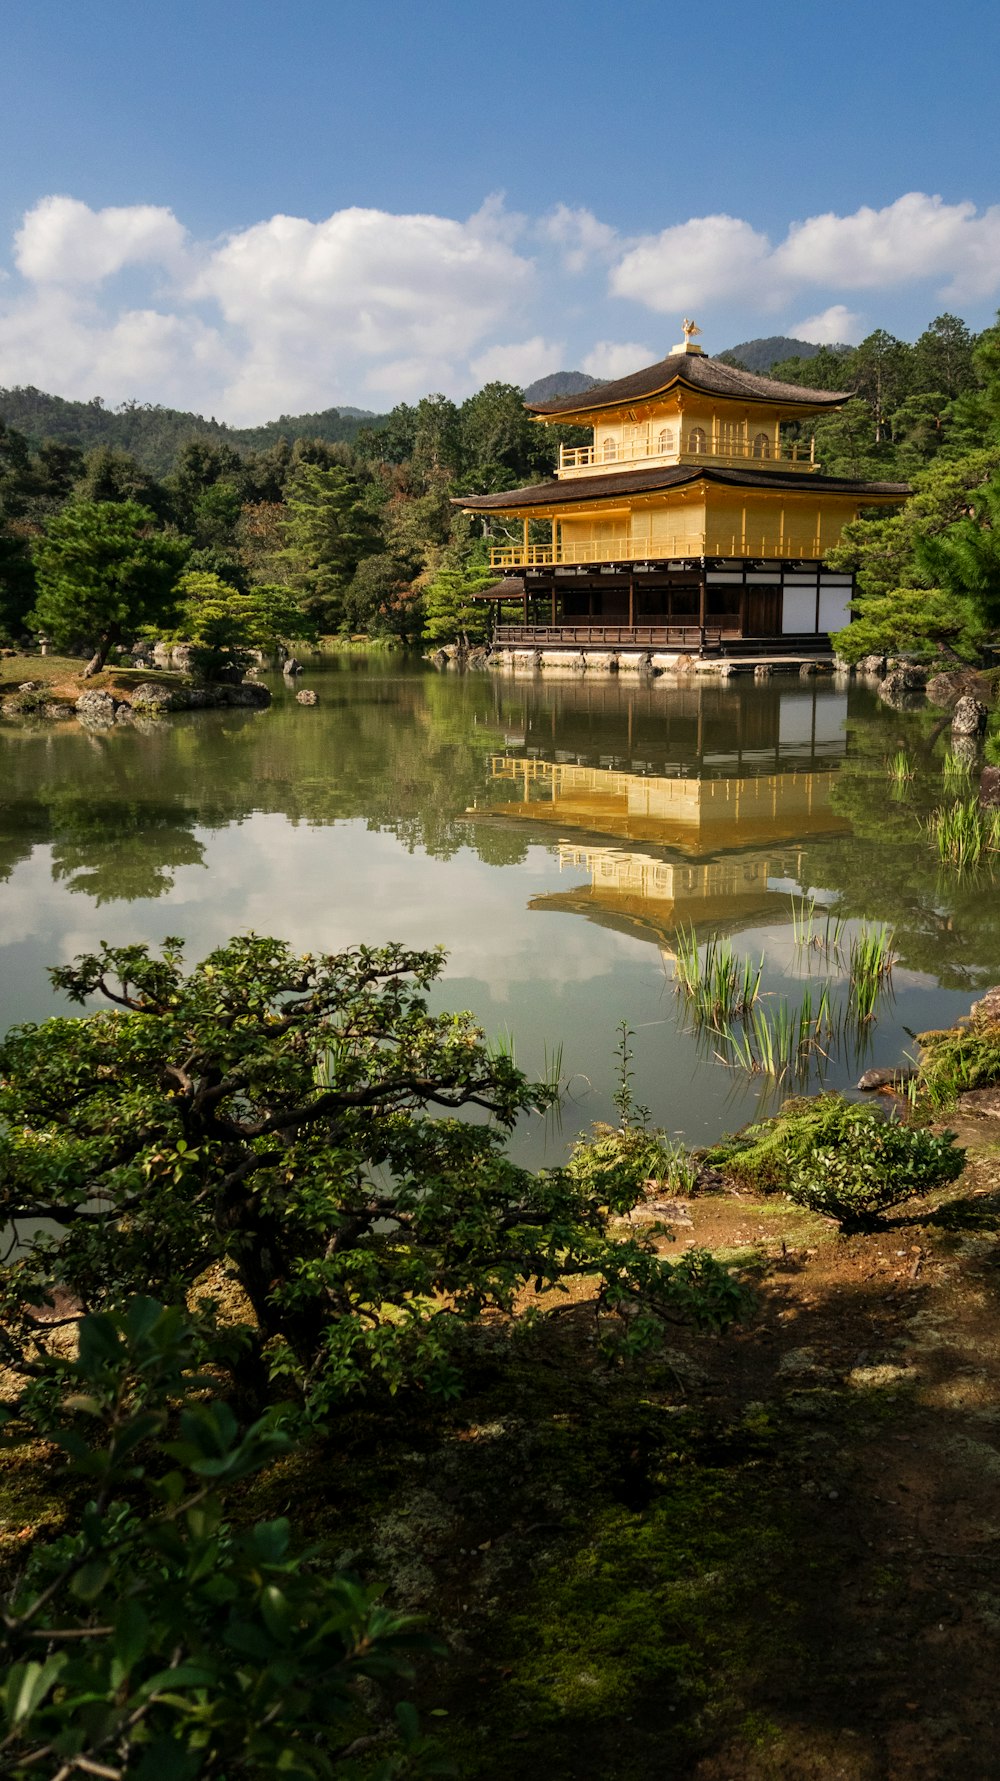 gelber Tempel in der Nähe von Bäumen mit Blick auf das Gewässer